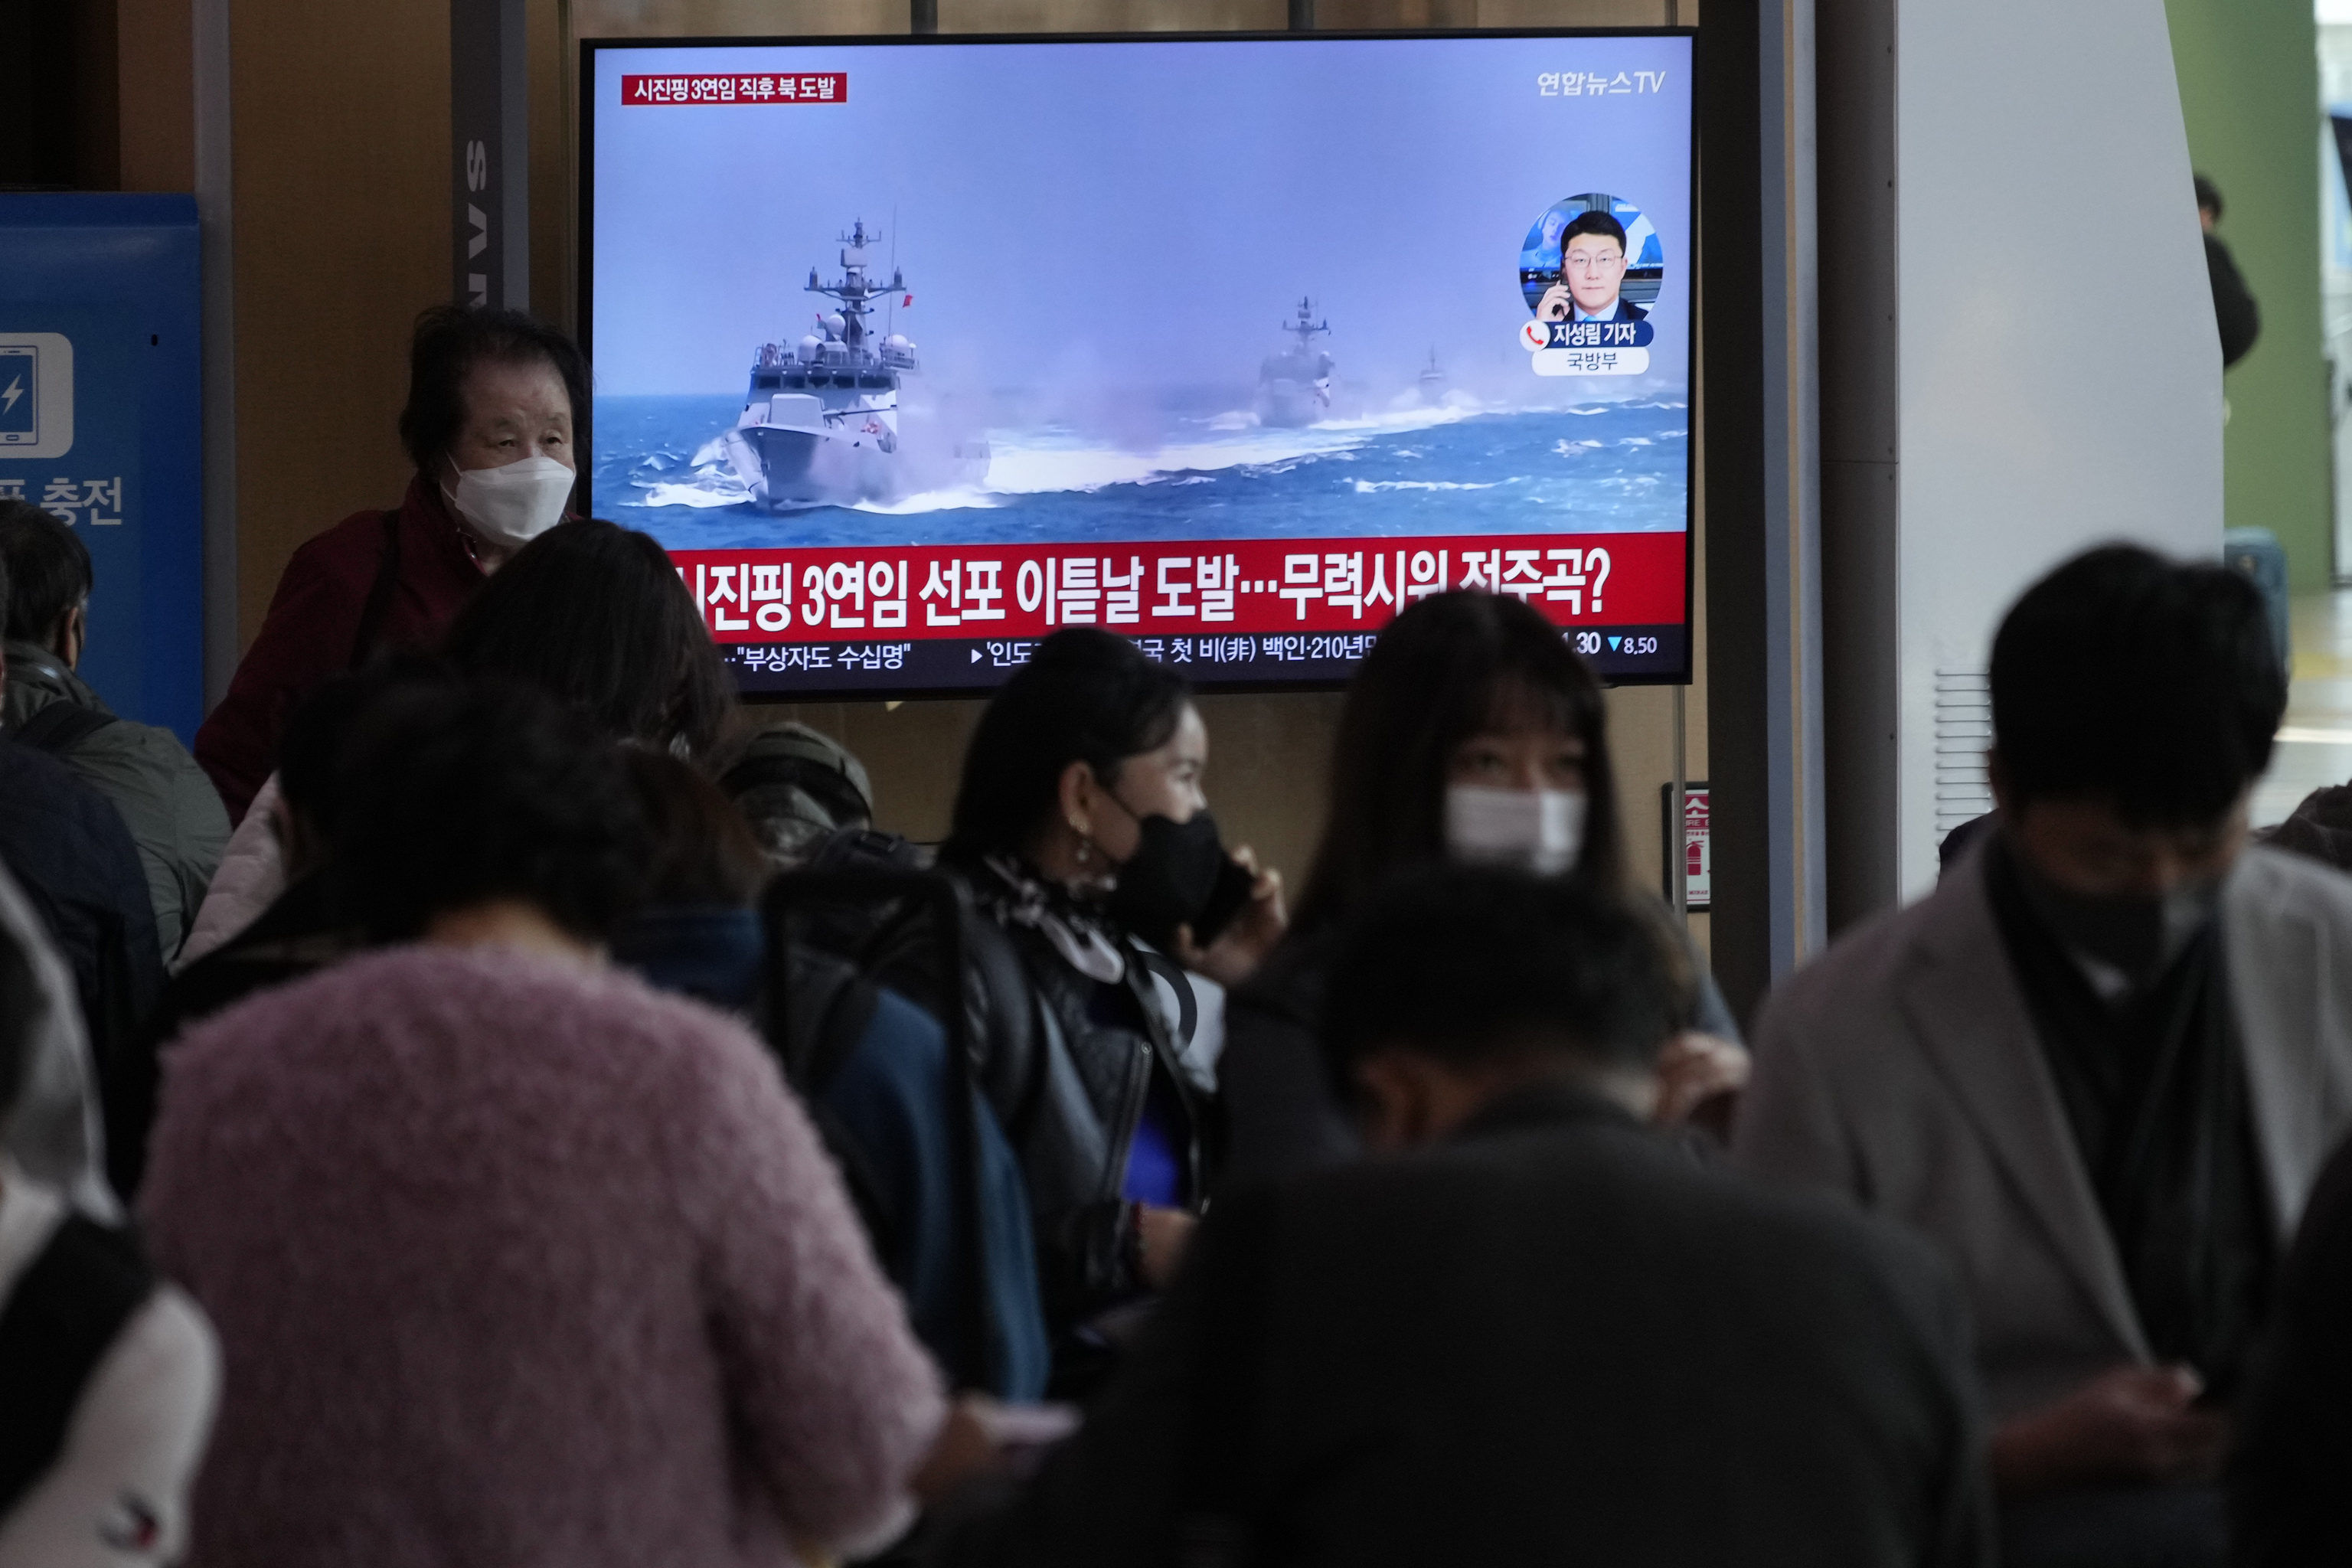 Una televisin muestra una imagen de archivo de los buques de la marina de Corea del Sur durante un programa de noticias en la estacin de tren de Sel, Corea del Sur, el lunes 24 de octubre de 2022. Las Coreas rivales intercambiaron disparos de advertencia a lo largo de su disputada frontera martima occidental el lunes, dijeron sus ejrcitos, en medio de la creciente animosidad por la reciente avalancha de pruebas de armas de Corea del Norte.